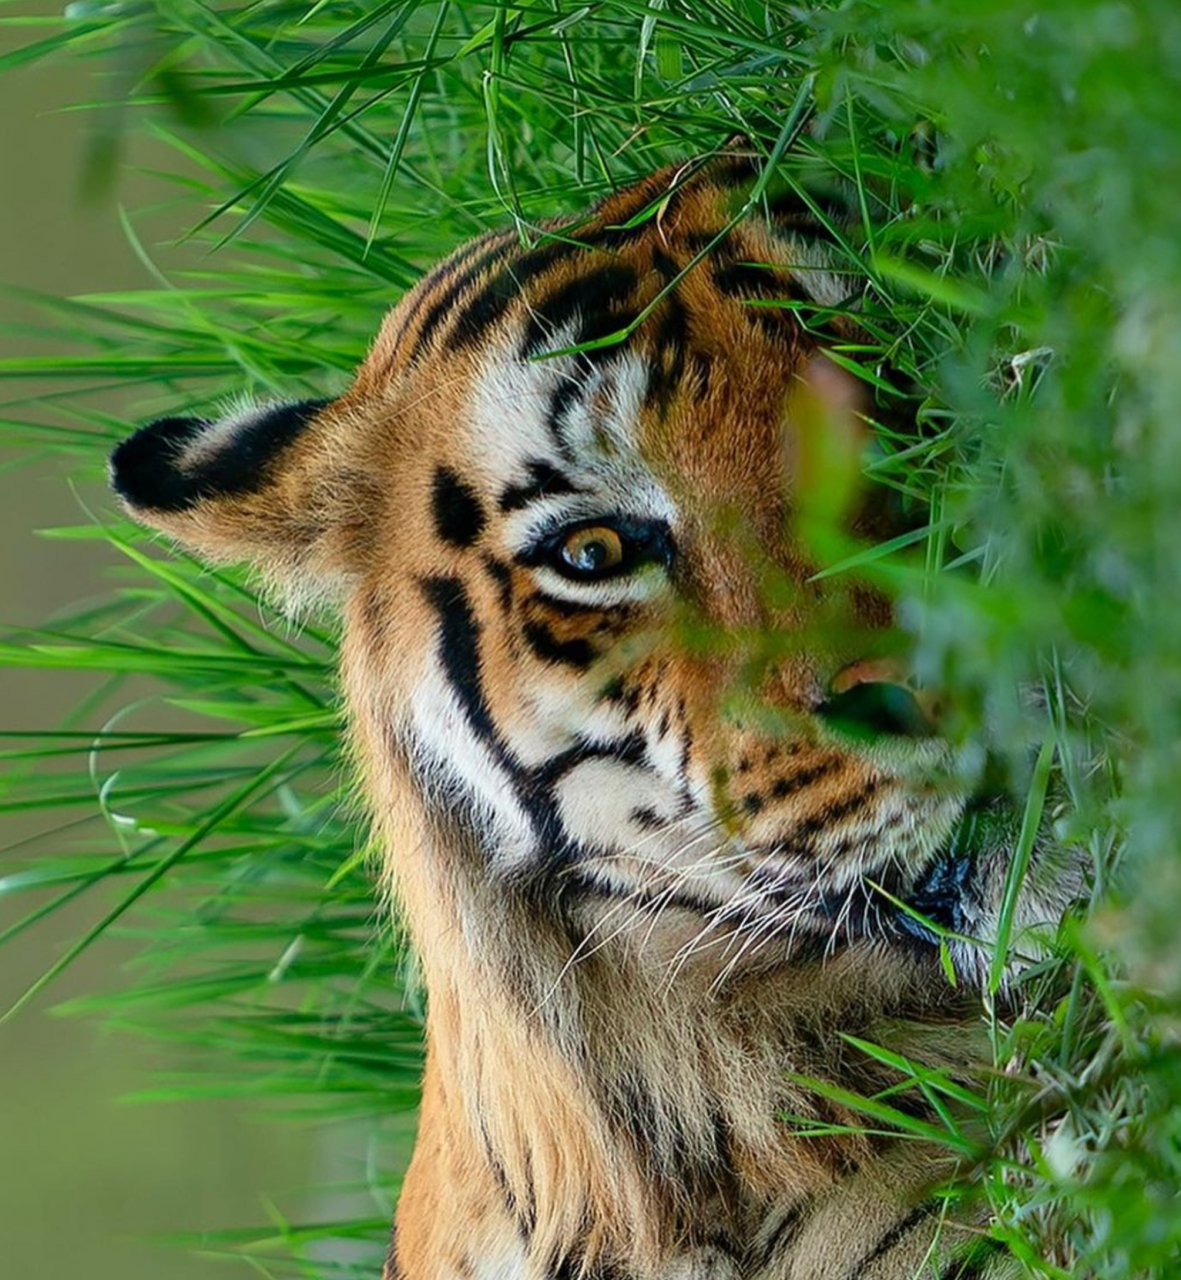 老虎的身姿显得非常威严,它躺在在一片草地上,身躯笔挺而有力,肌肉